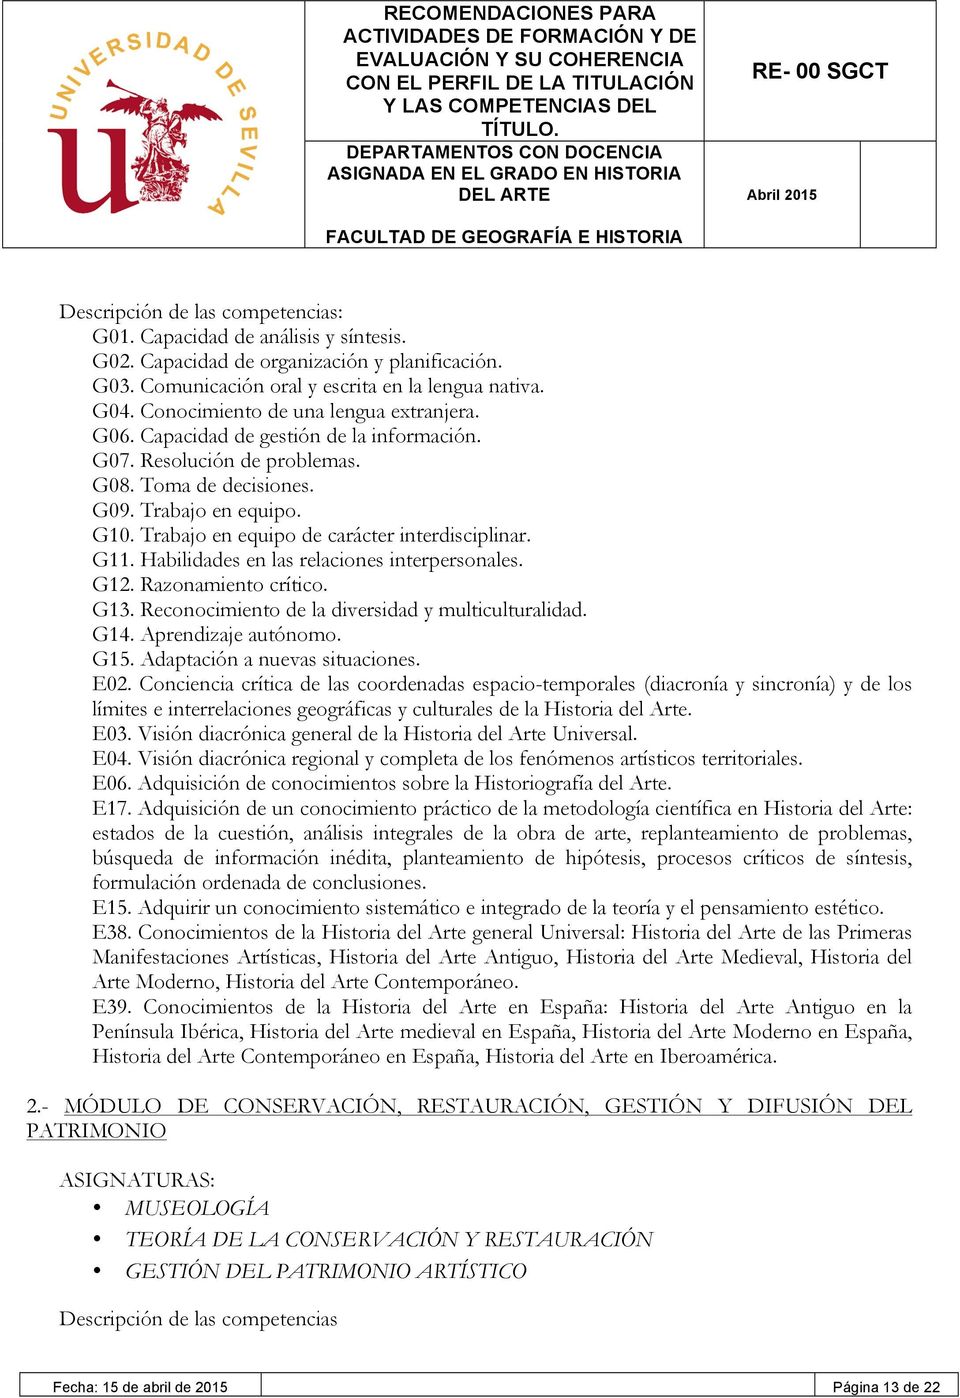 Adquisición de conocimientos sobre la Historiografía del Arte. E17.